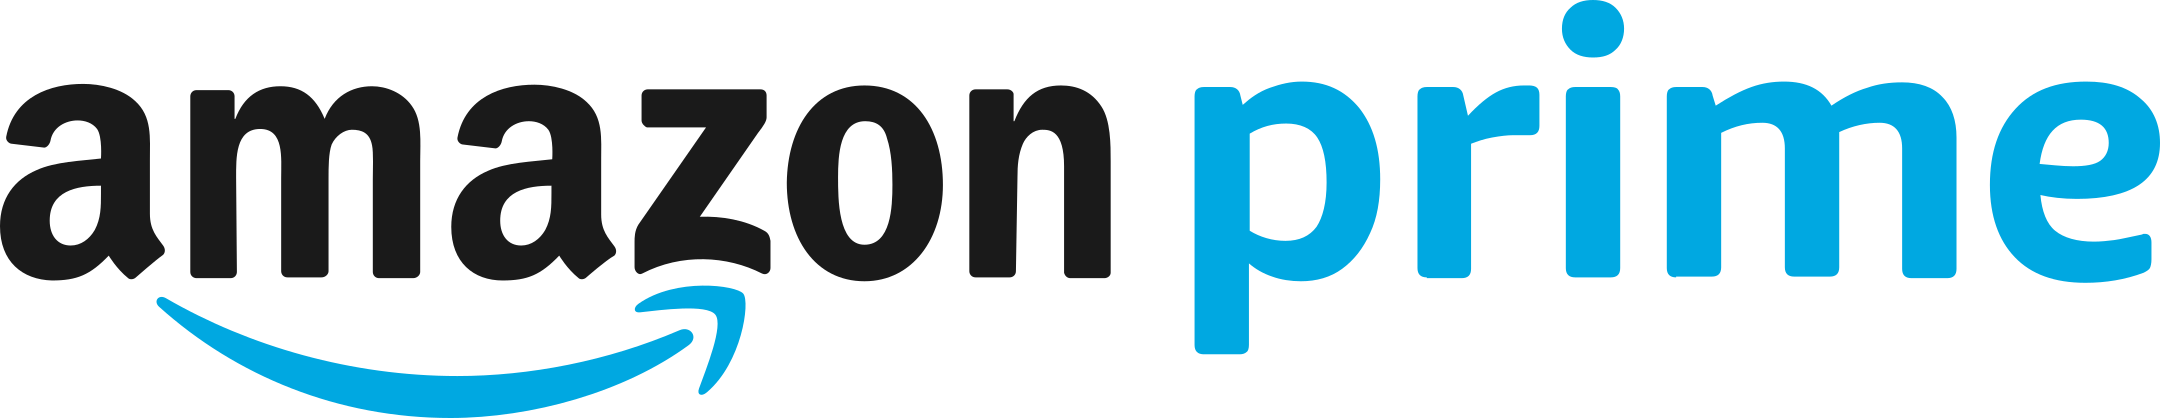 amazon prime logo 1 - Amazon Prime Logo